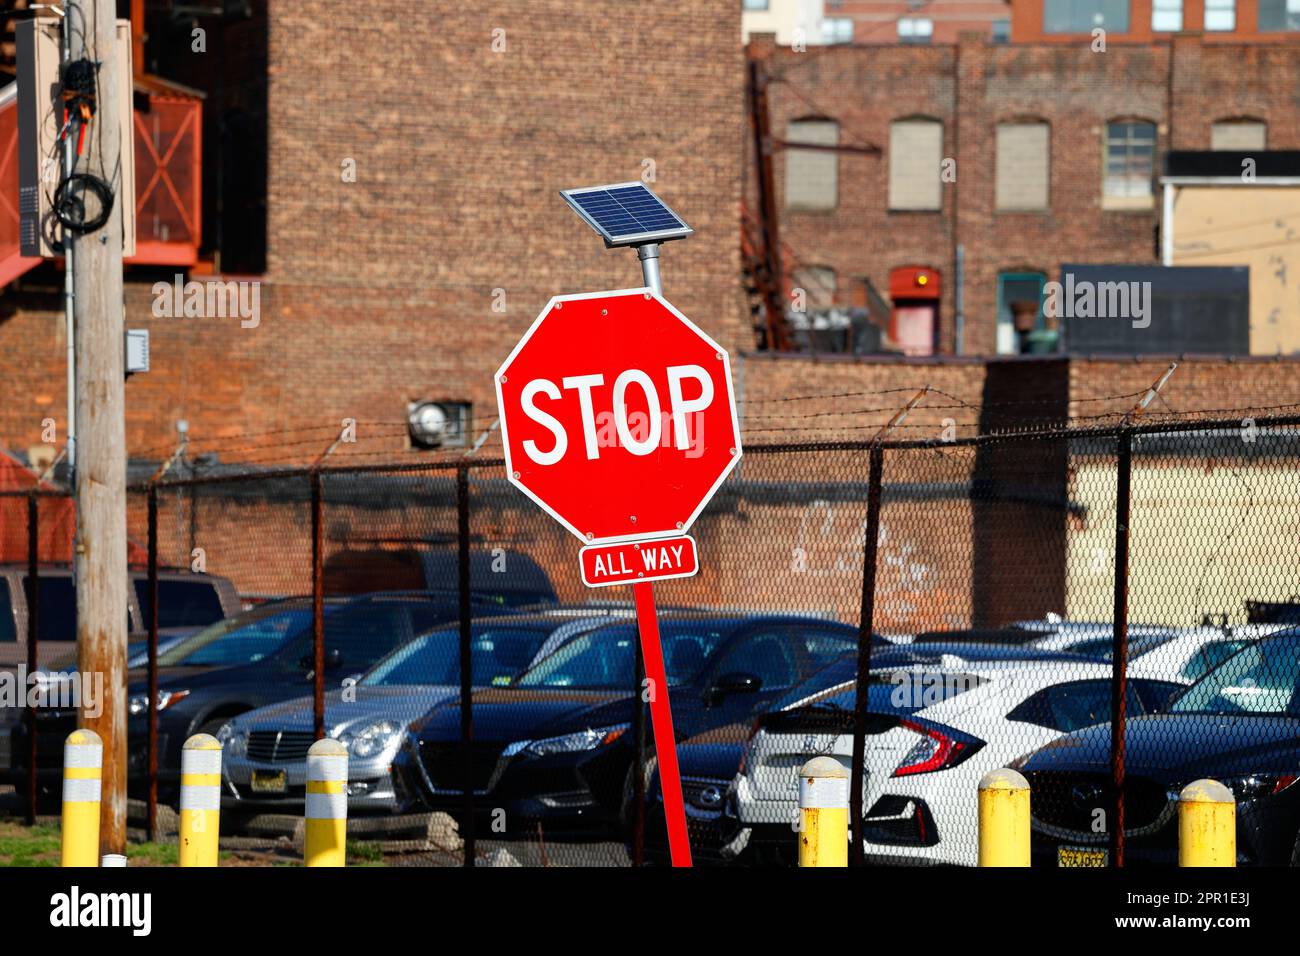 Ein solarbetriebenes blinkendes LED-Stoppschild. Diese solarbetriebenen Schilder werden während der Abendstunden beleuchtet, um den Fahrer auf das Schild aufmerksam zu machen. Stockfoto